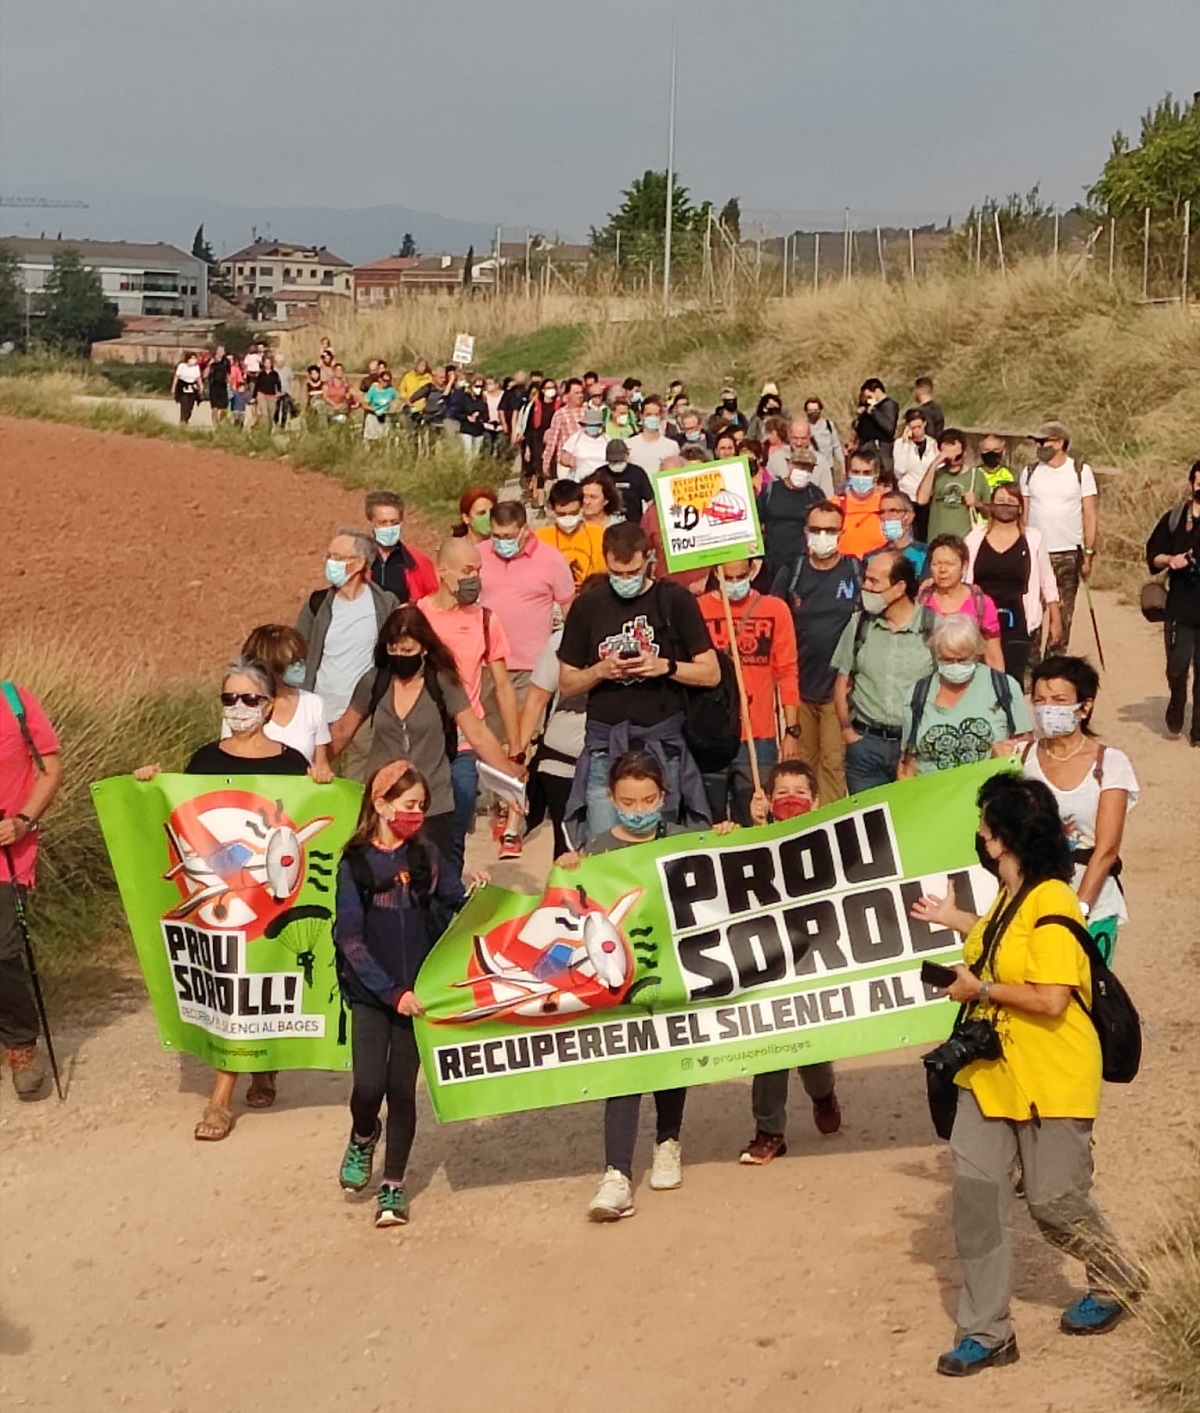 Pla general dels assistents caminant cap a l'aeròdrom de Sant Fruitós de Bages., amb la pancarta en primer terme. Imatge publicada el 3 d'octubre de 2021 (Vertical)